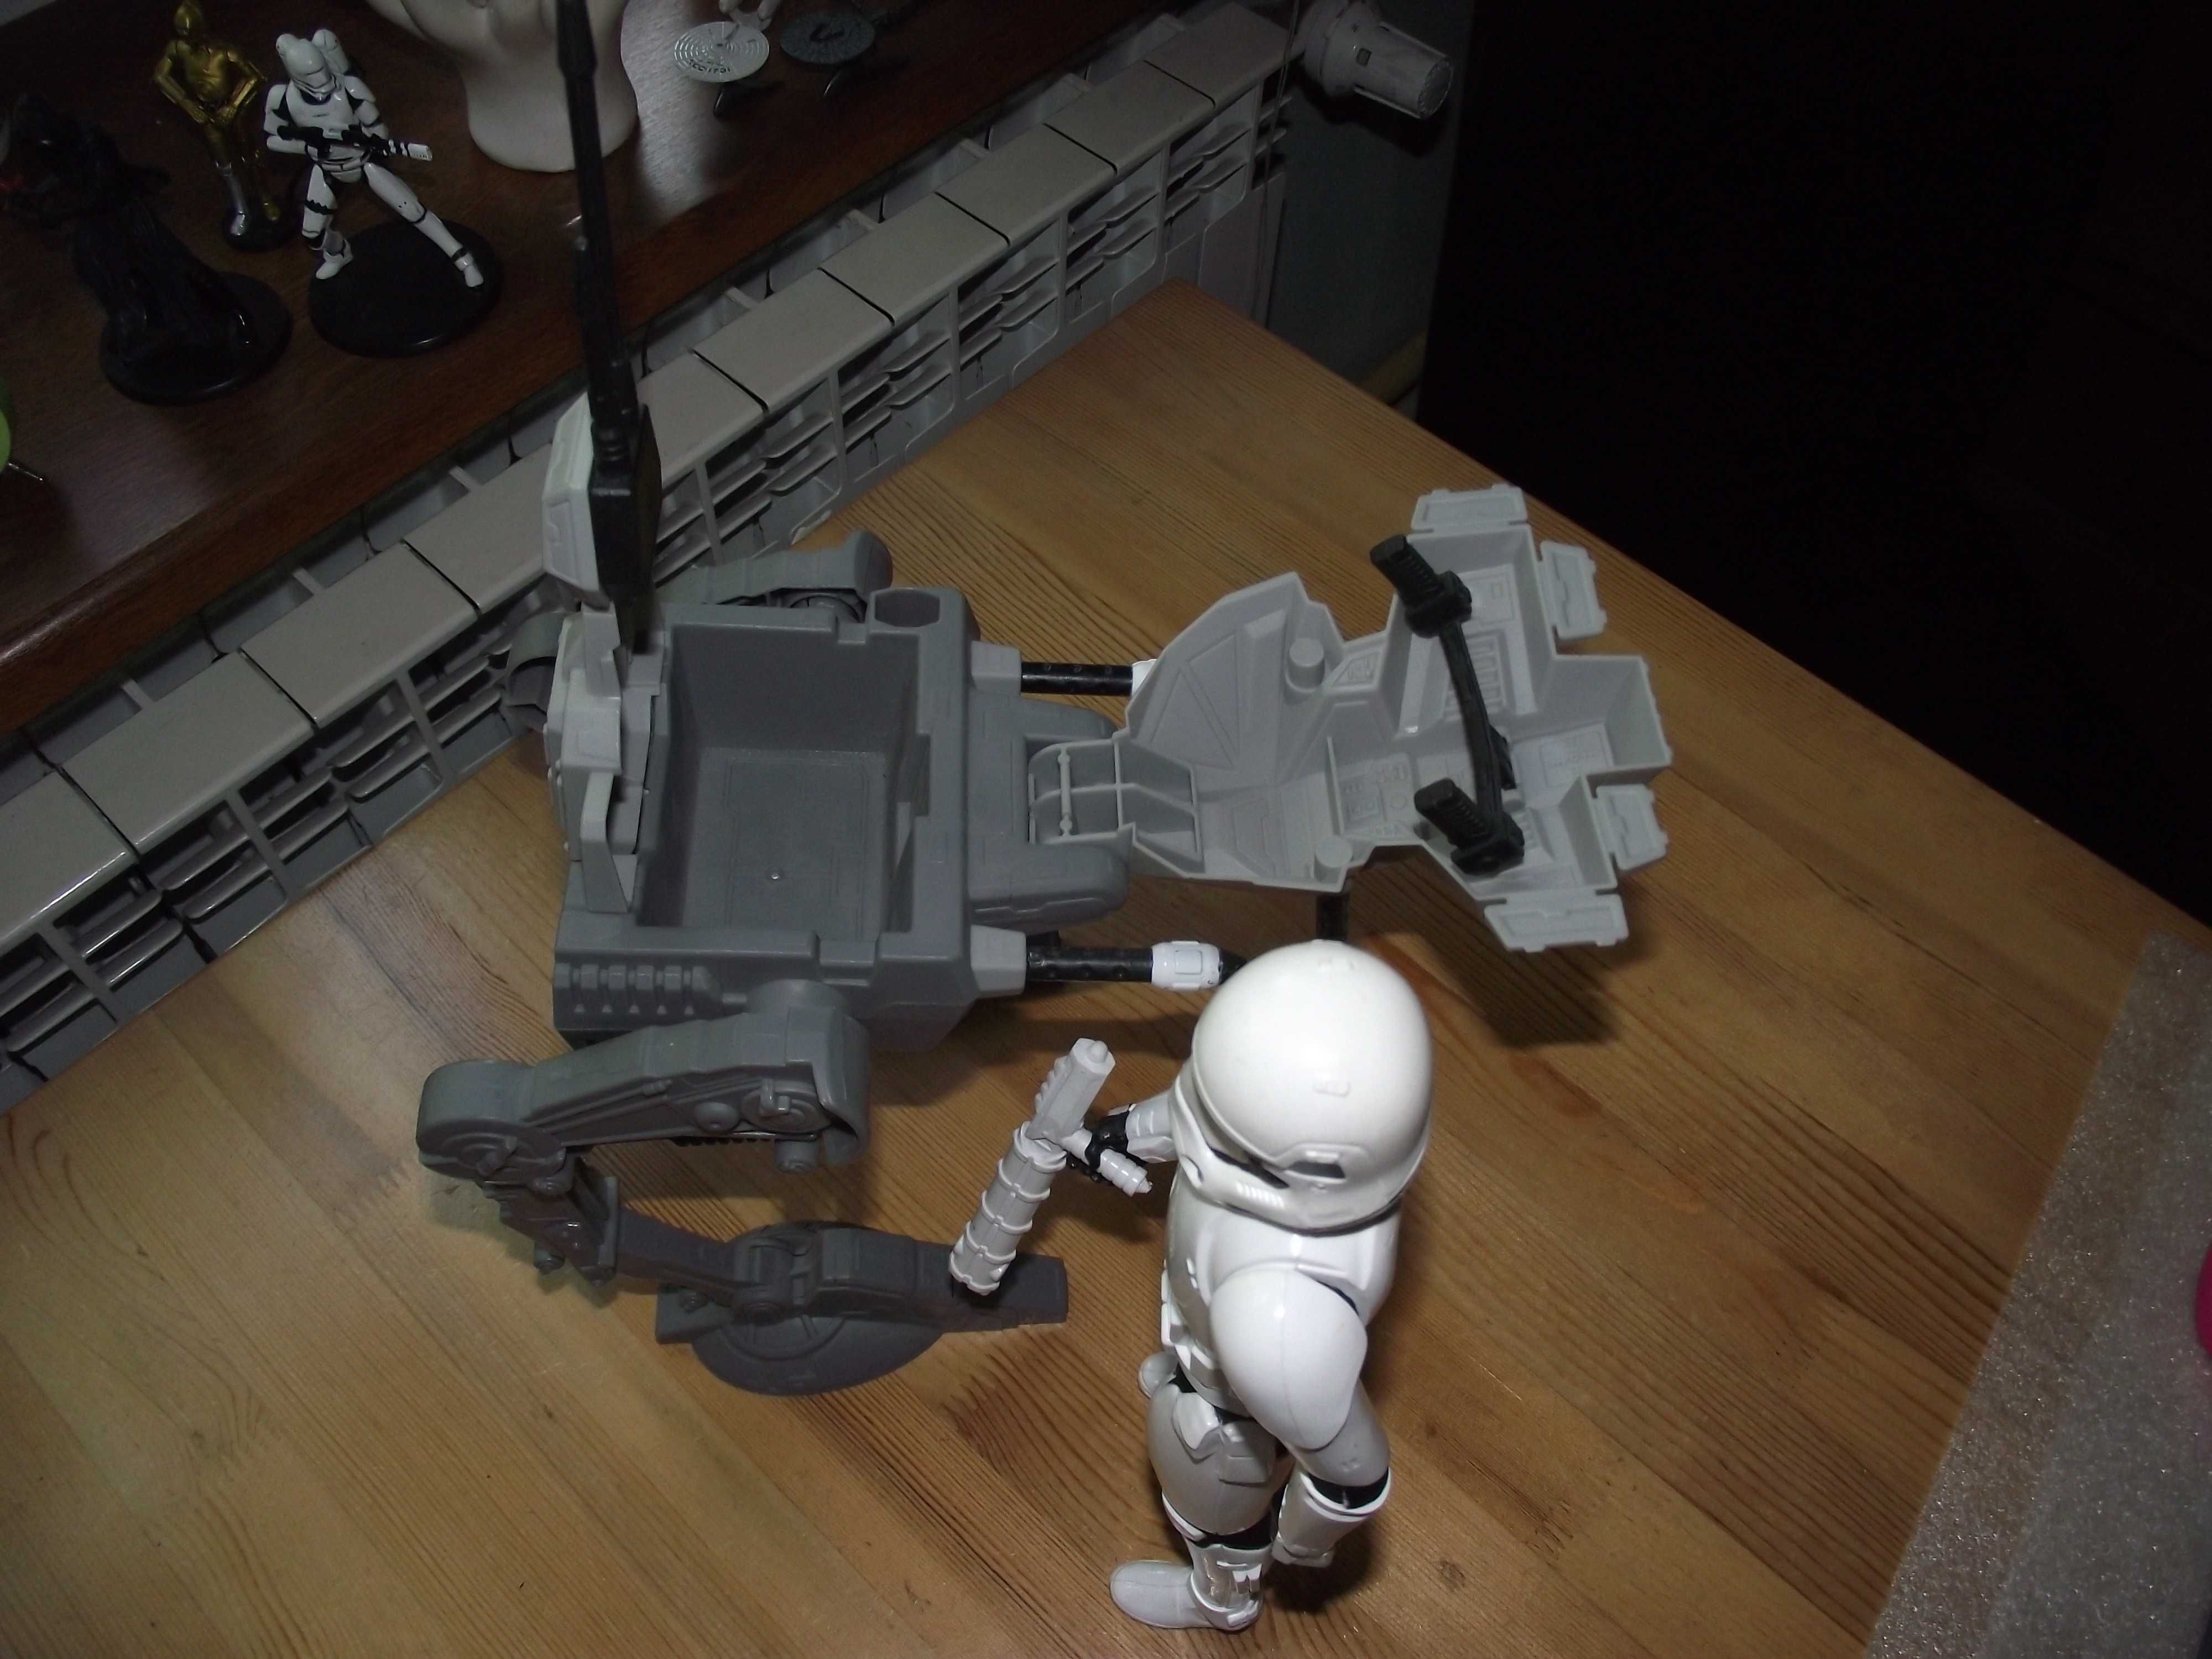 szturmowiec i maszyna krocząca zabawka Star wars